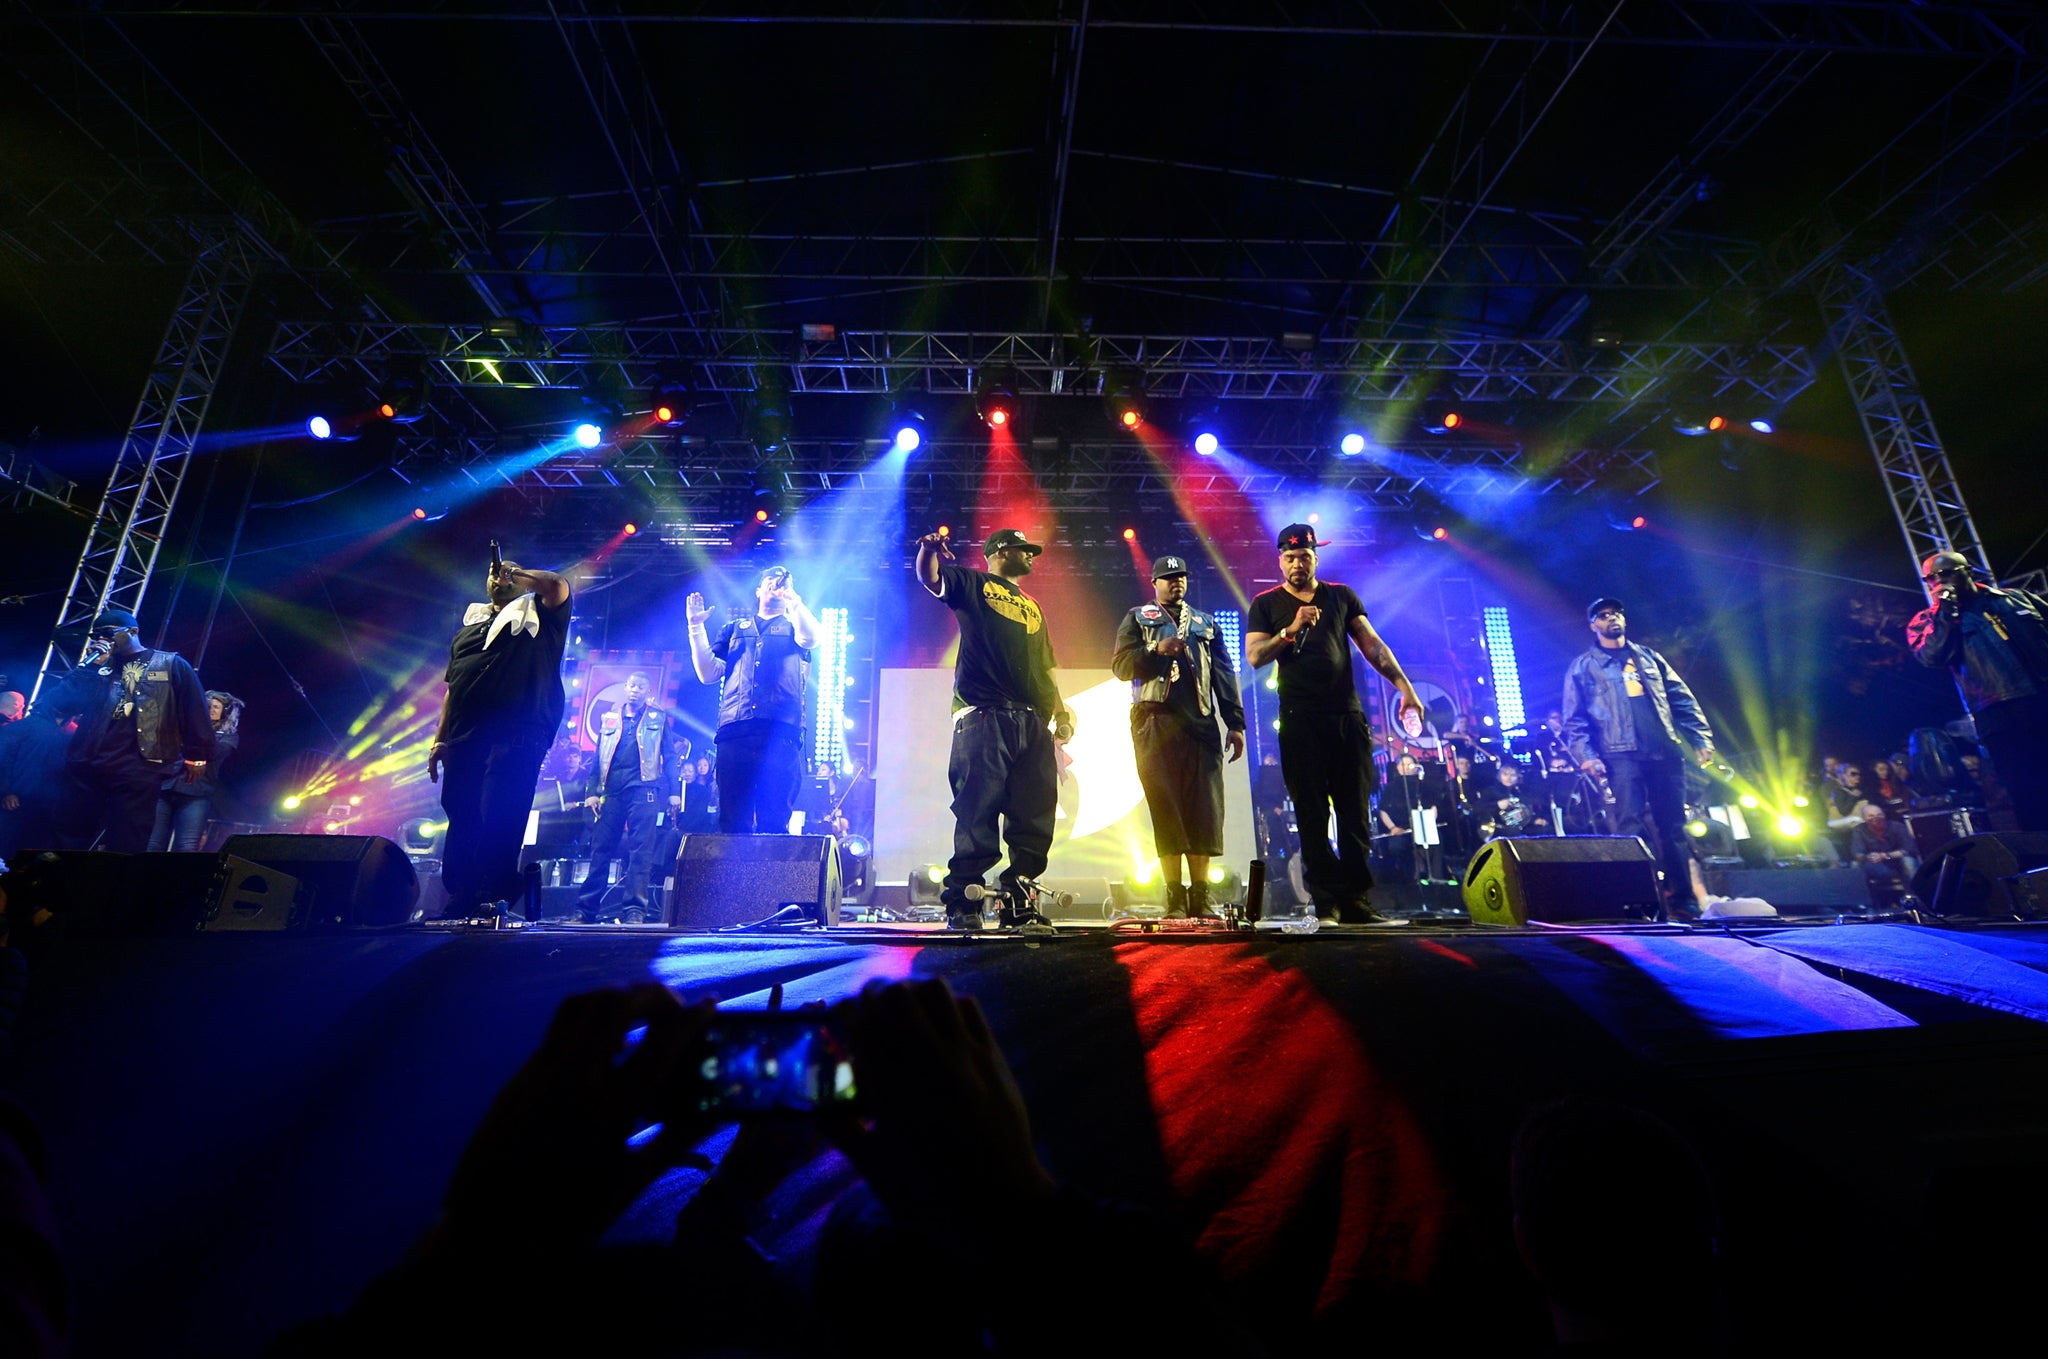 Wu-Tang perform at Coachella 2013